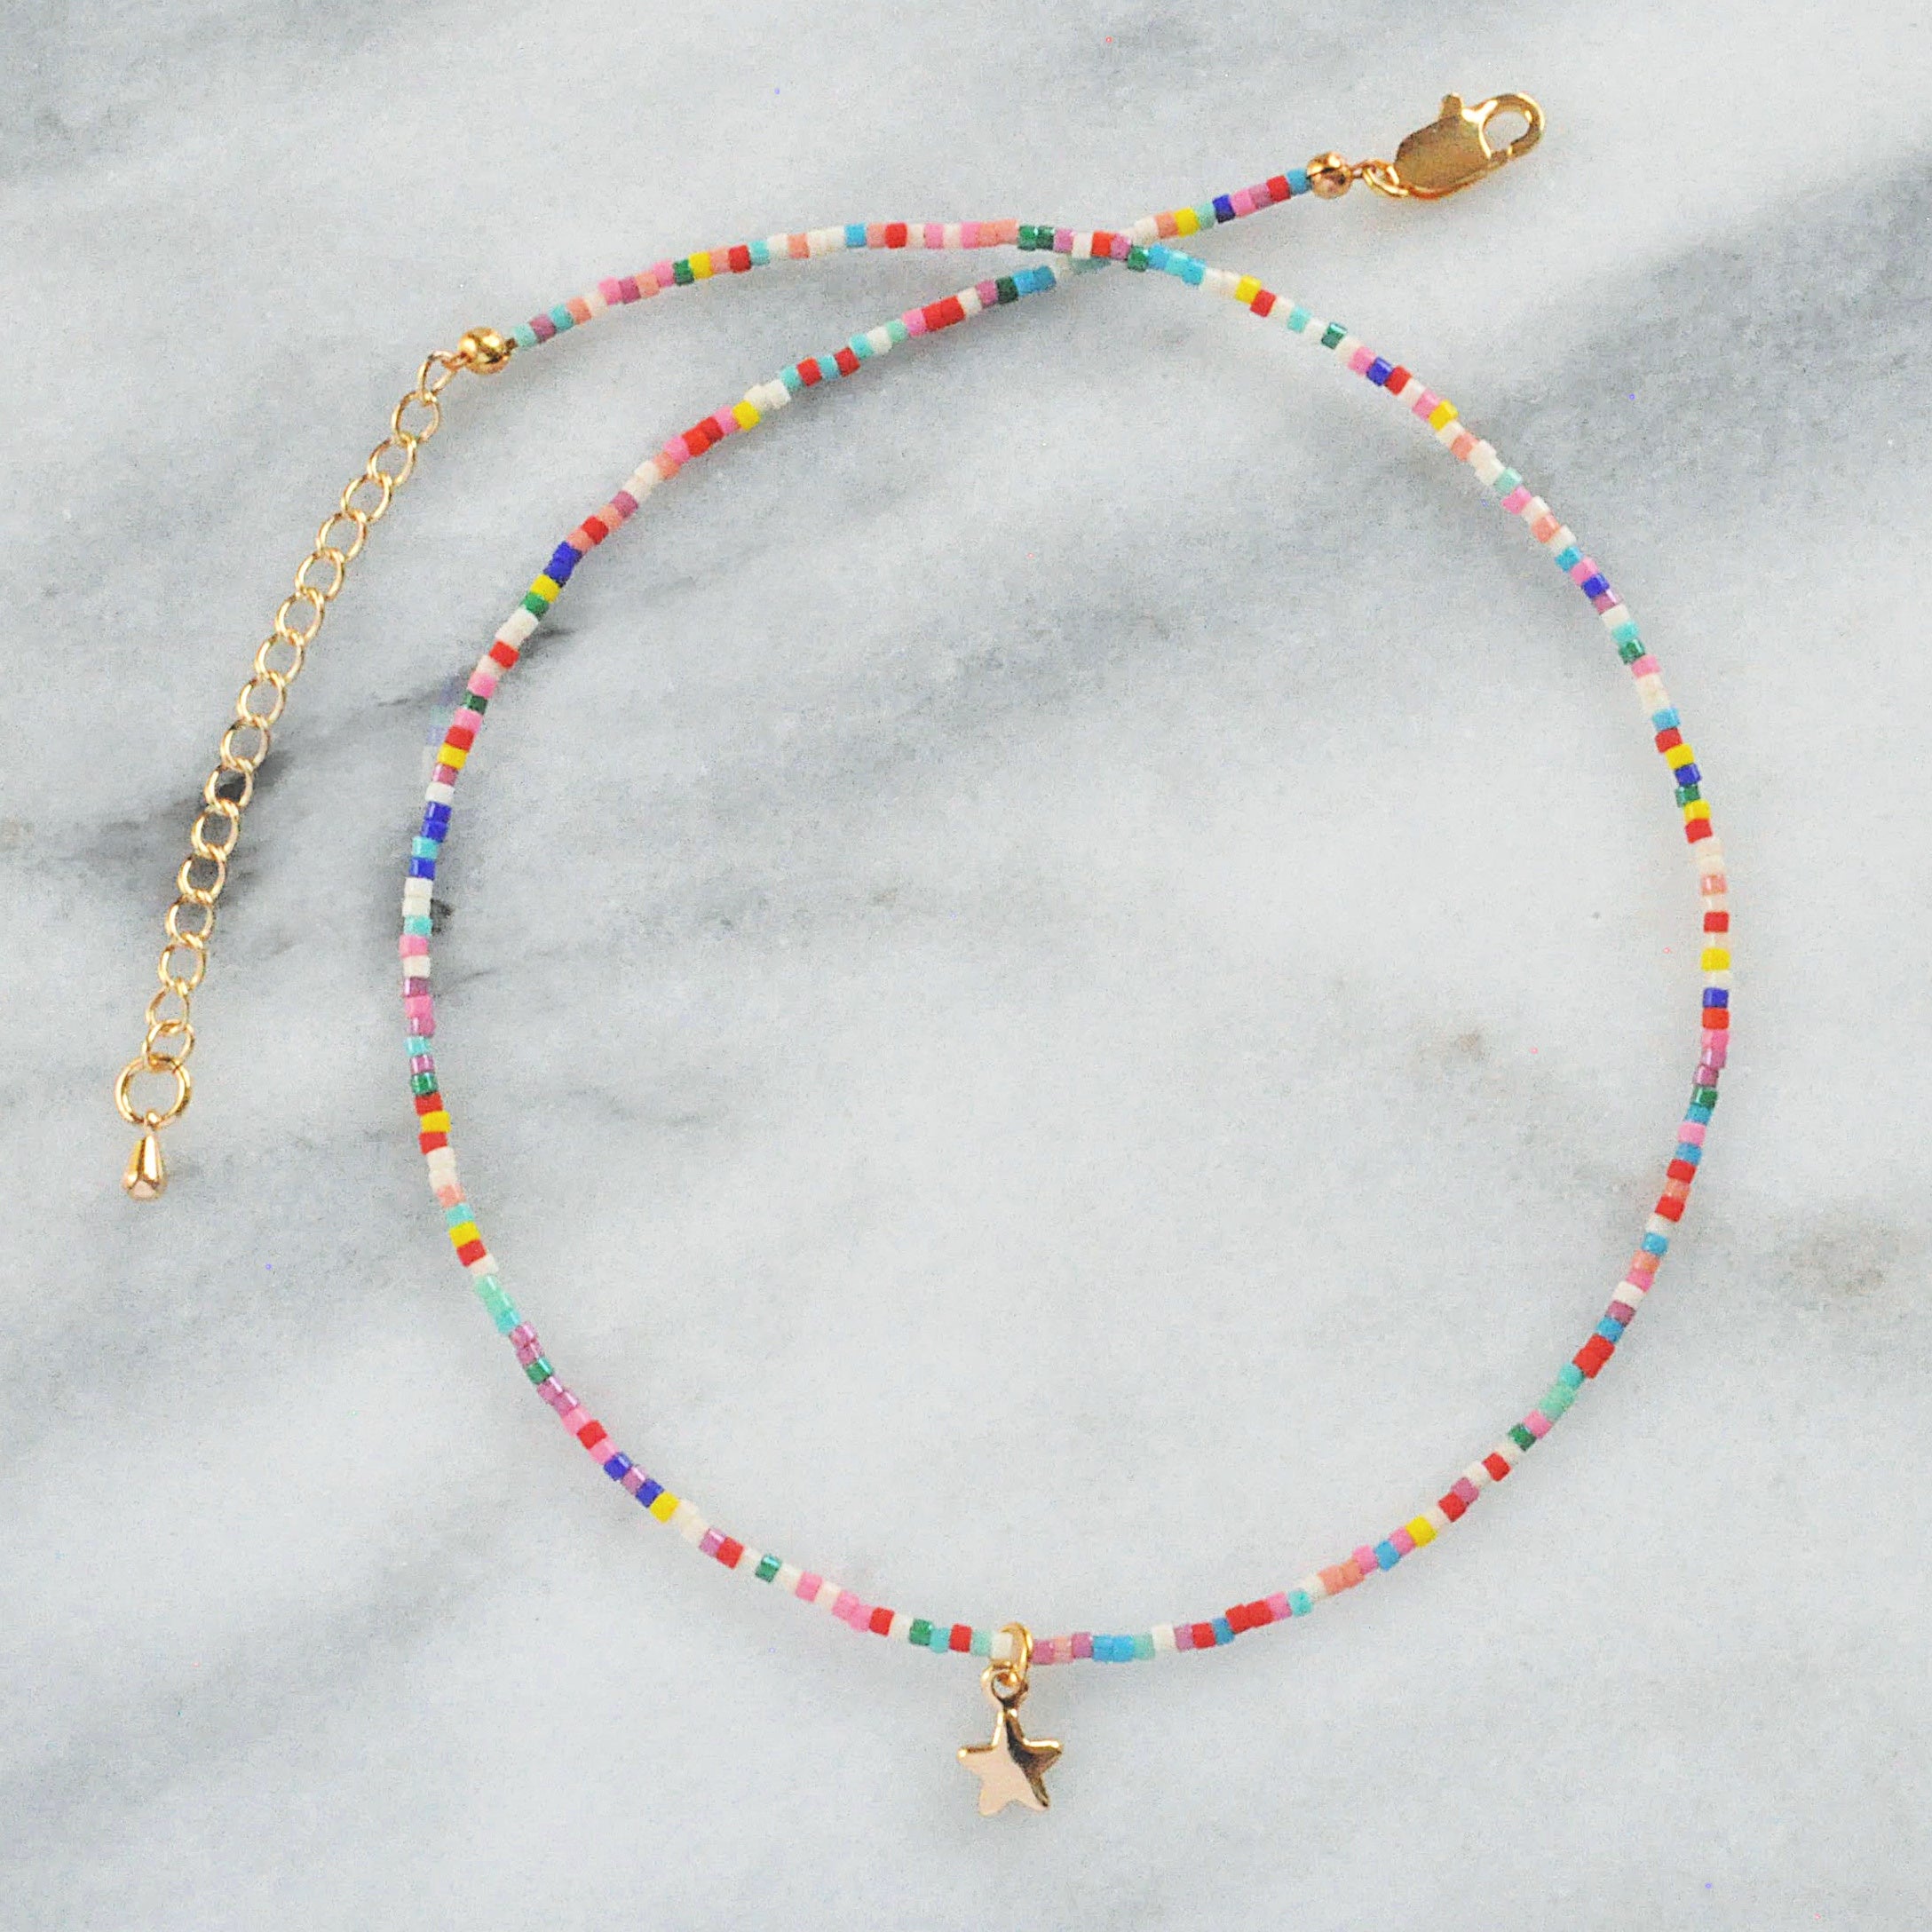 Sprinkles Choker Necklace | Handmade by Libby & Smee